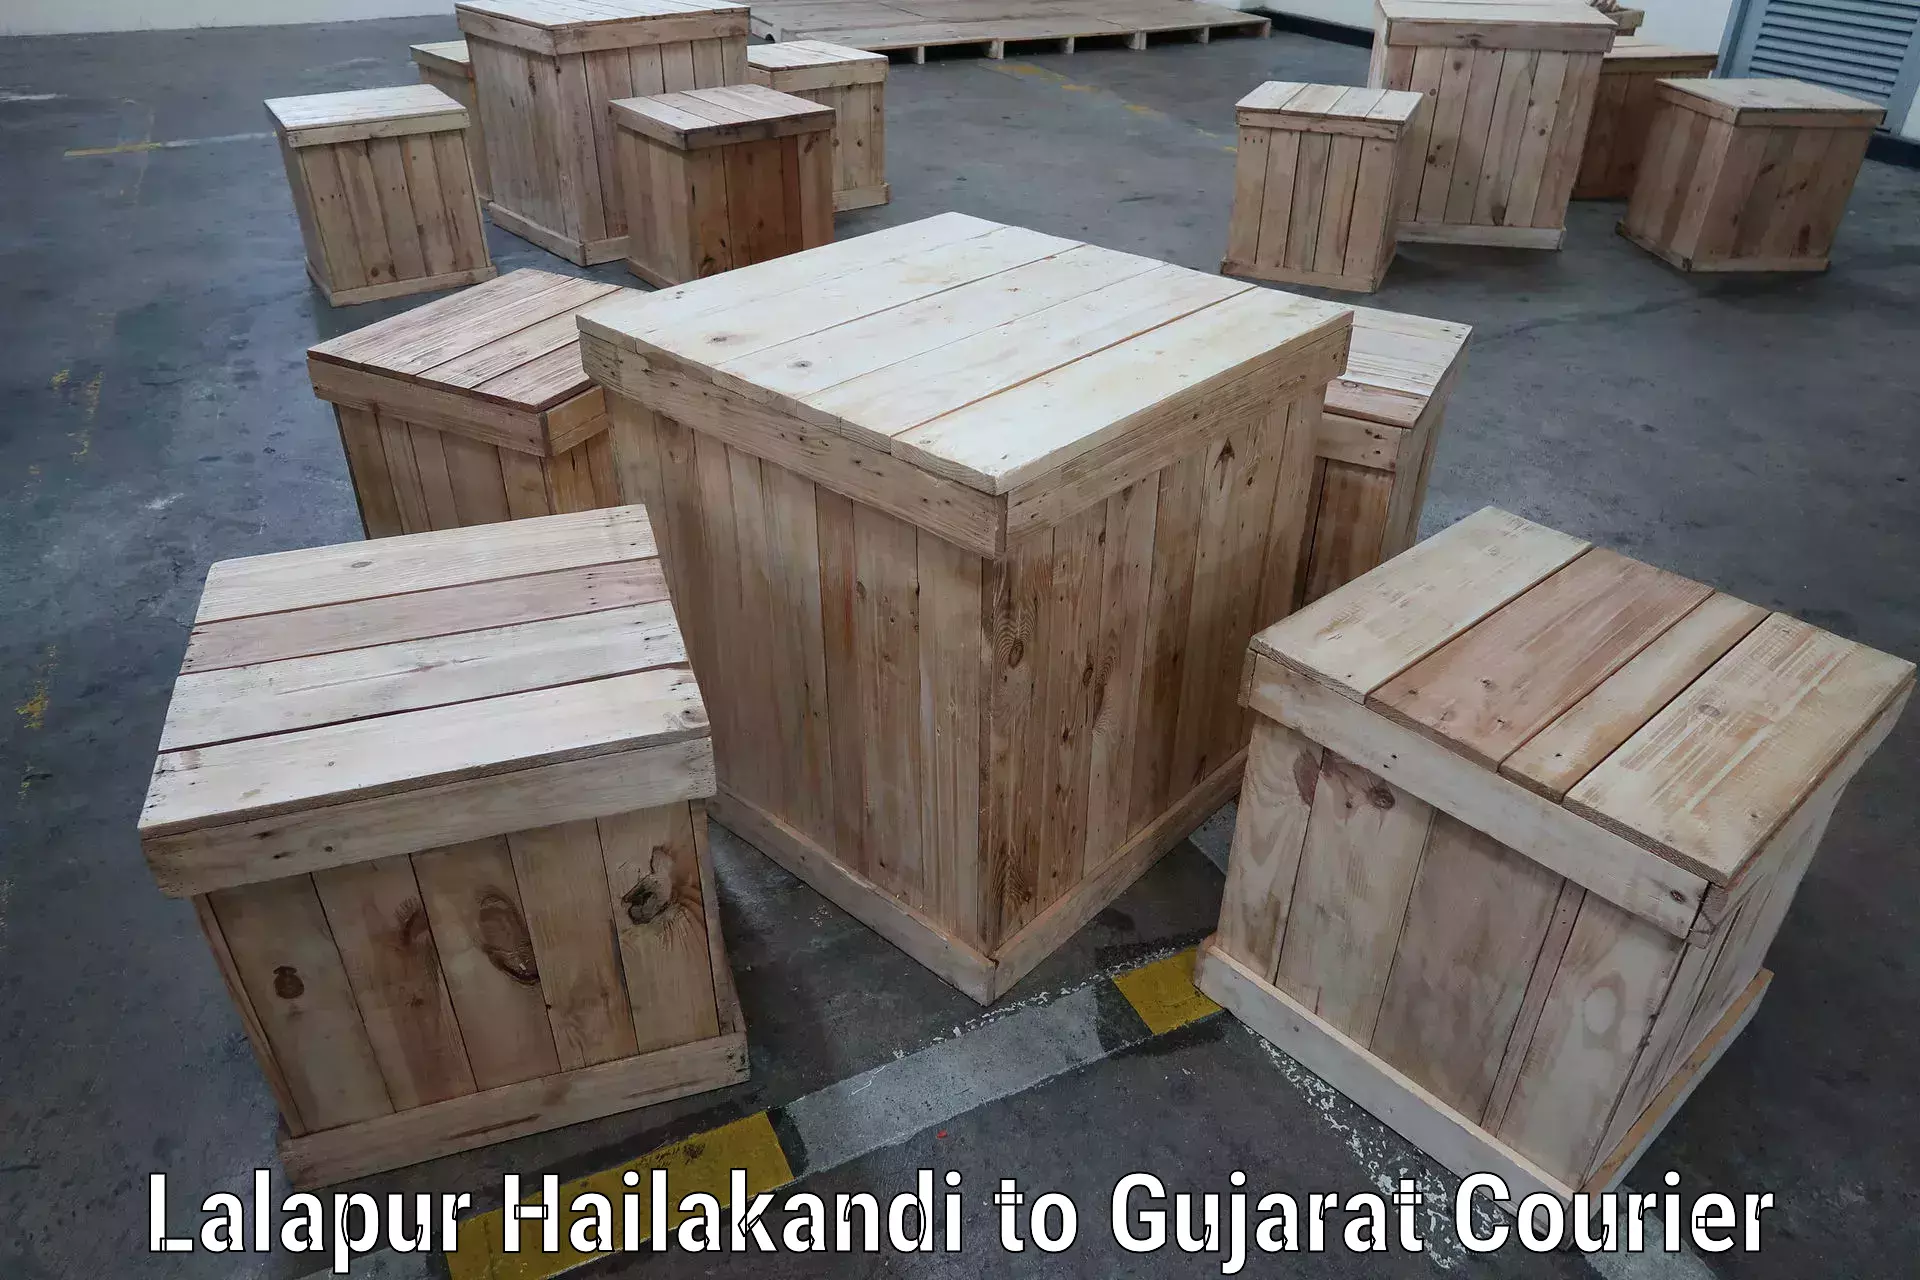 Global shipping solutions Lalapur Hailakandi to Palanpur